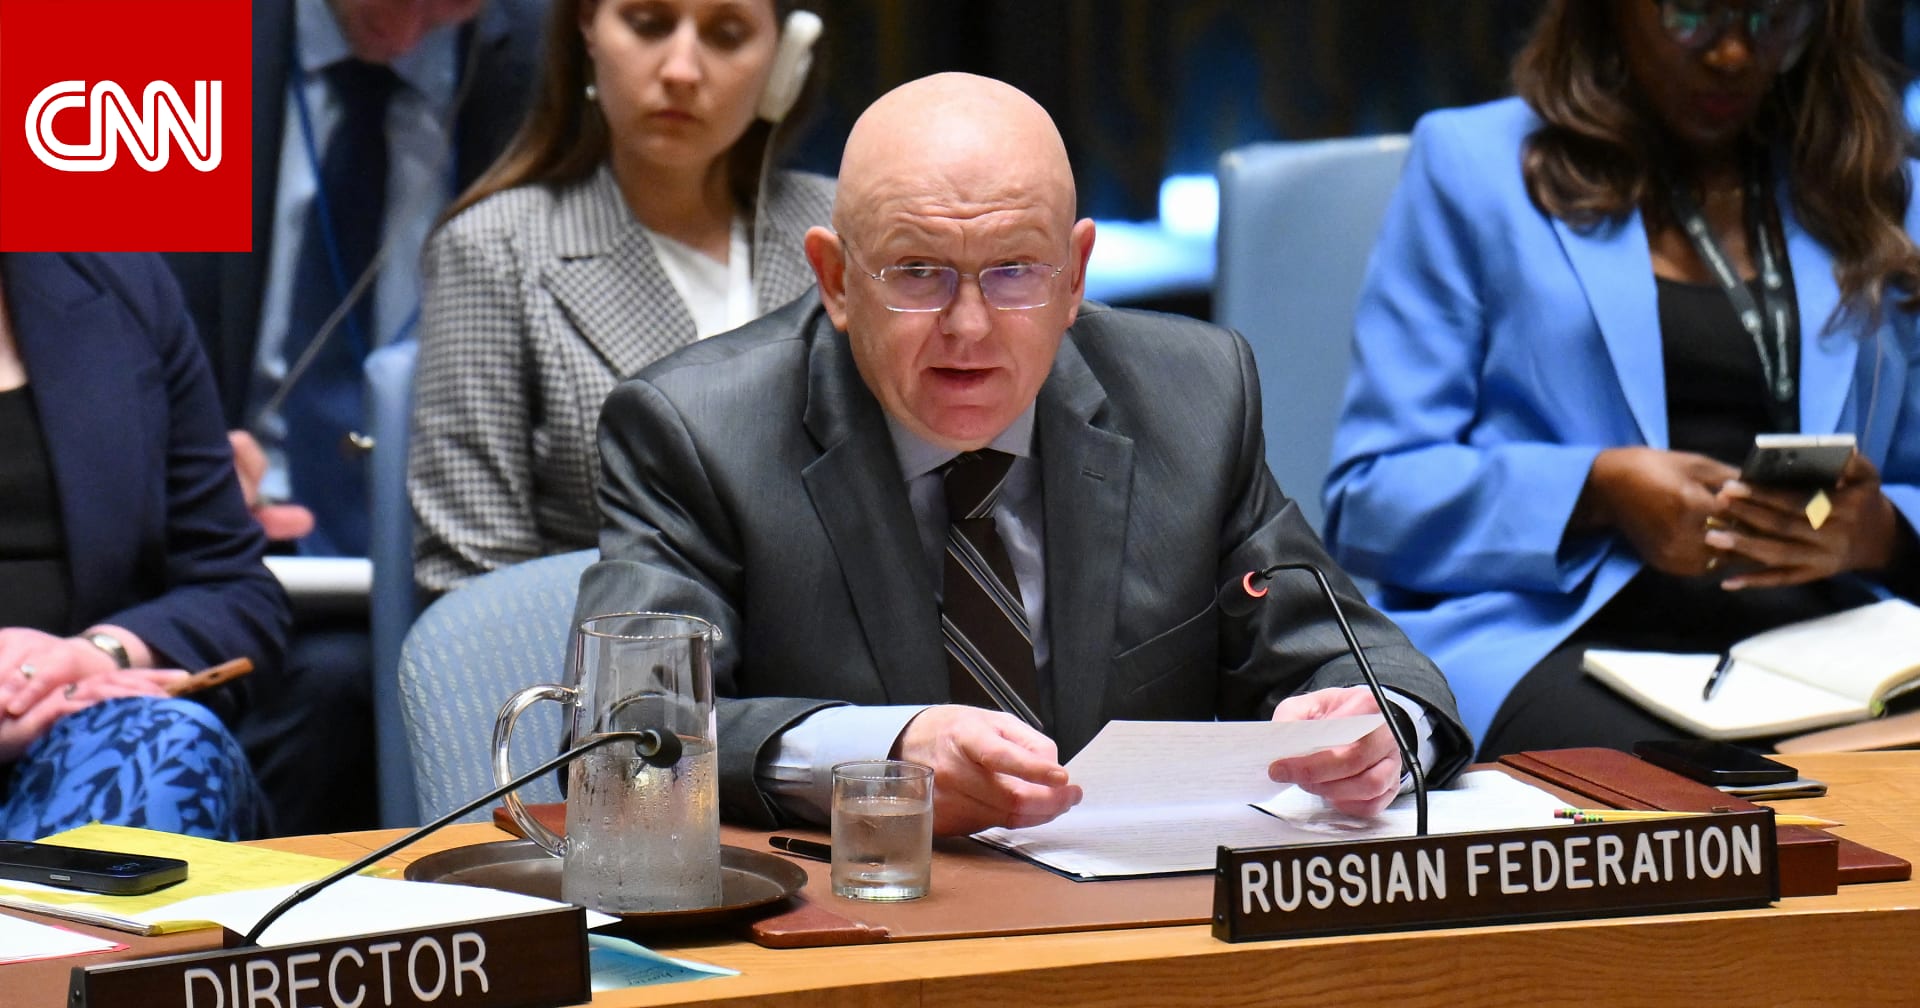 الكرملين يصف الأجواء في مجلس الأمن بأنها "تصادمية" تجاه روسيا